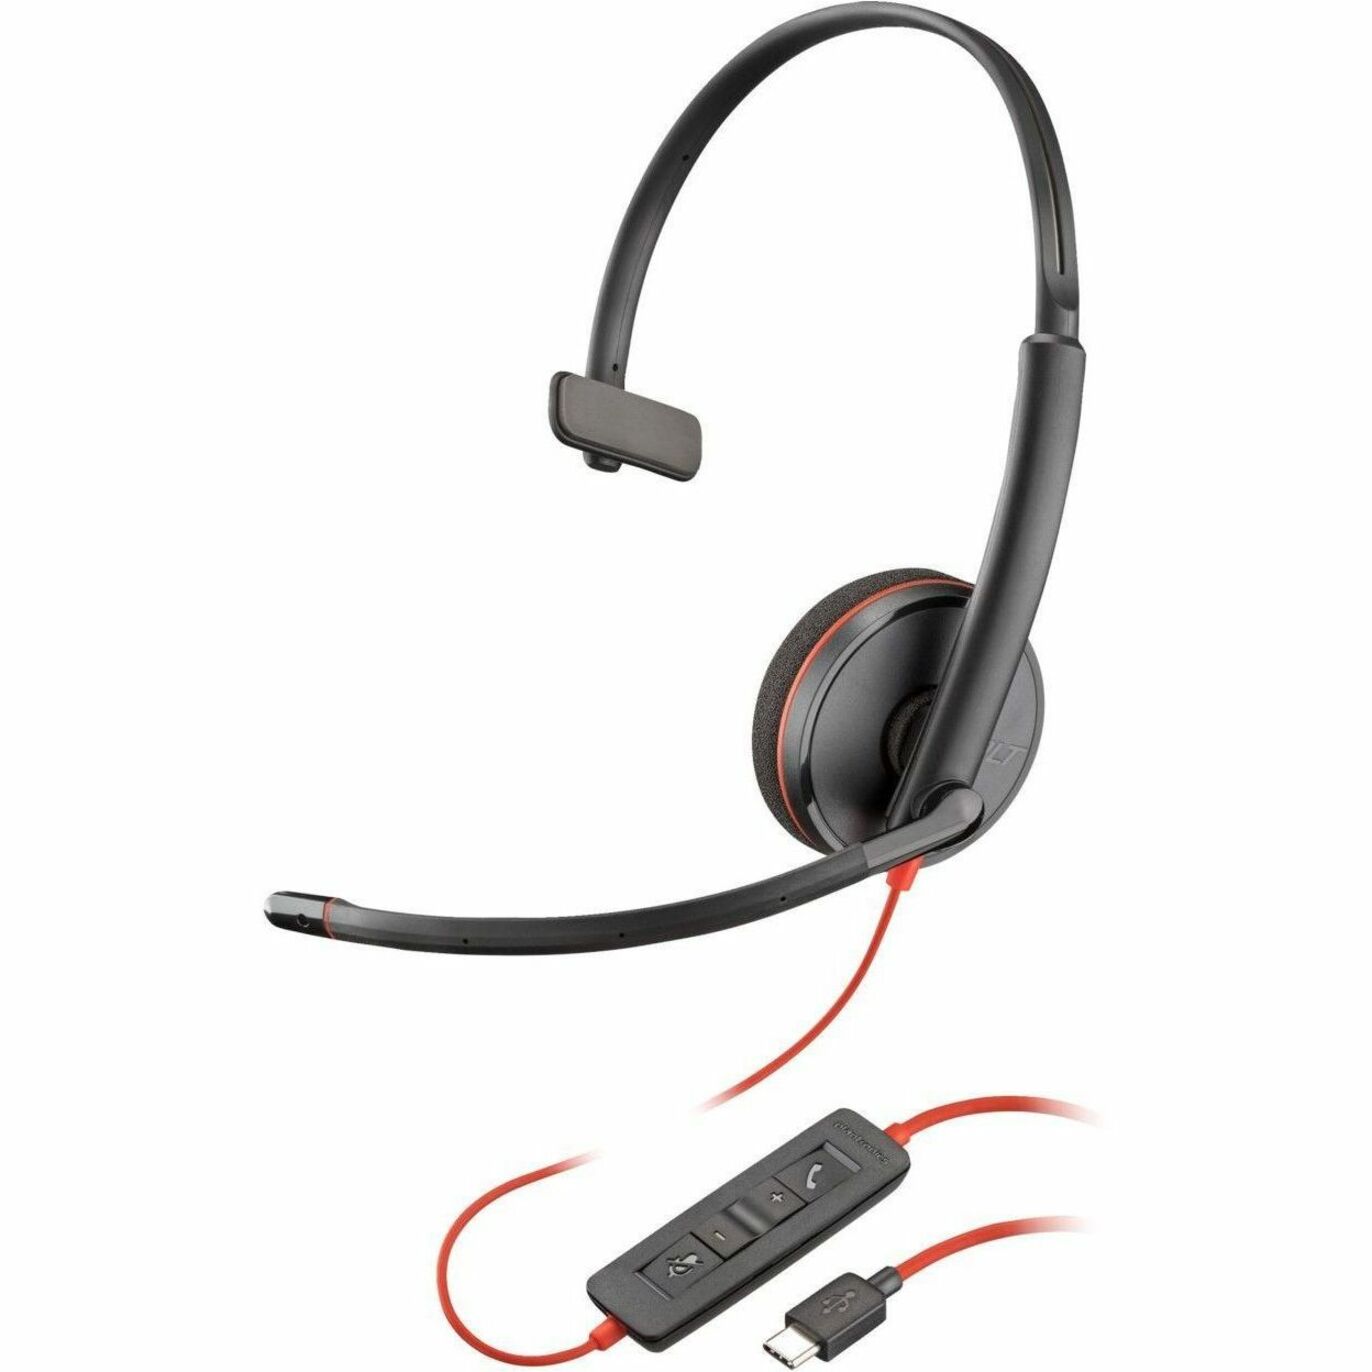 品牌: Poly 型号: 80S09A6 Blackwire 3210 Headset 单耳 顶戴式 USB C 迷你耳机插孔 (3.5毫米) 降噪